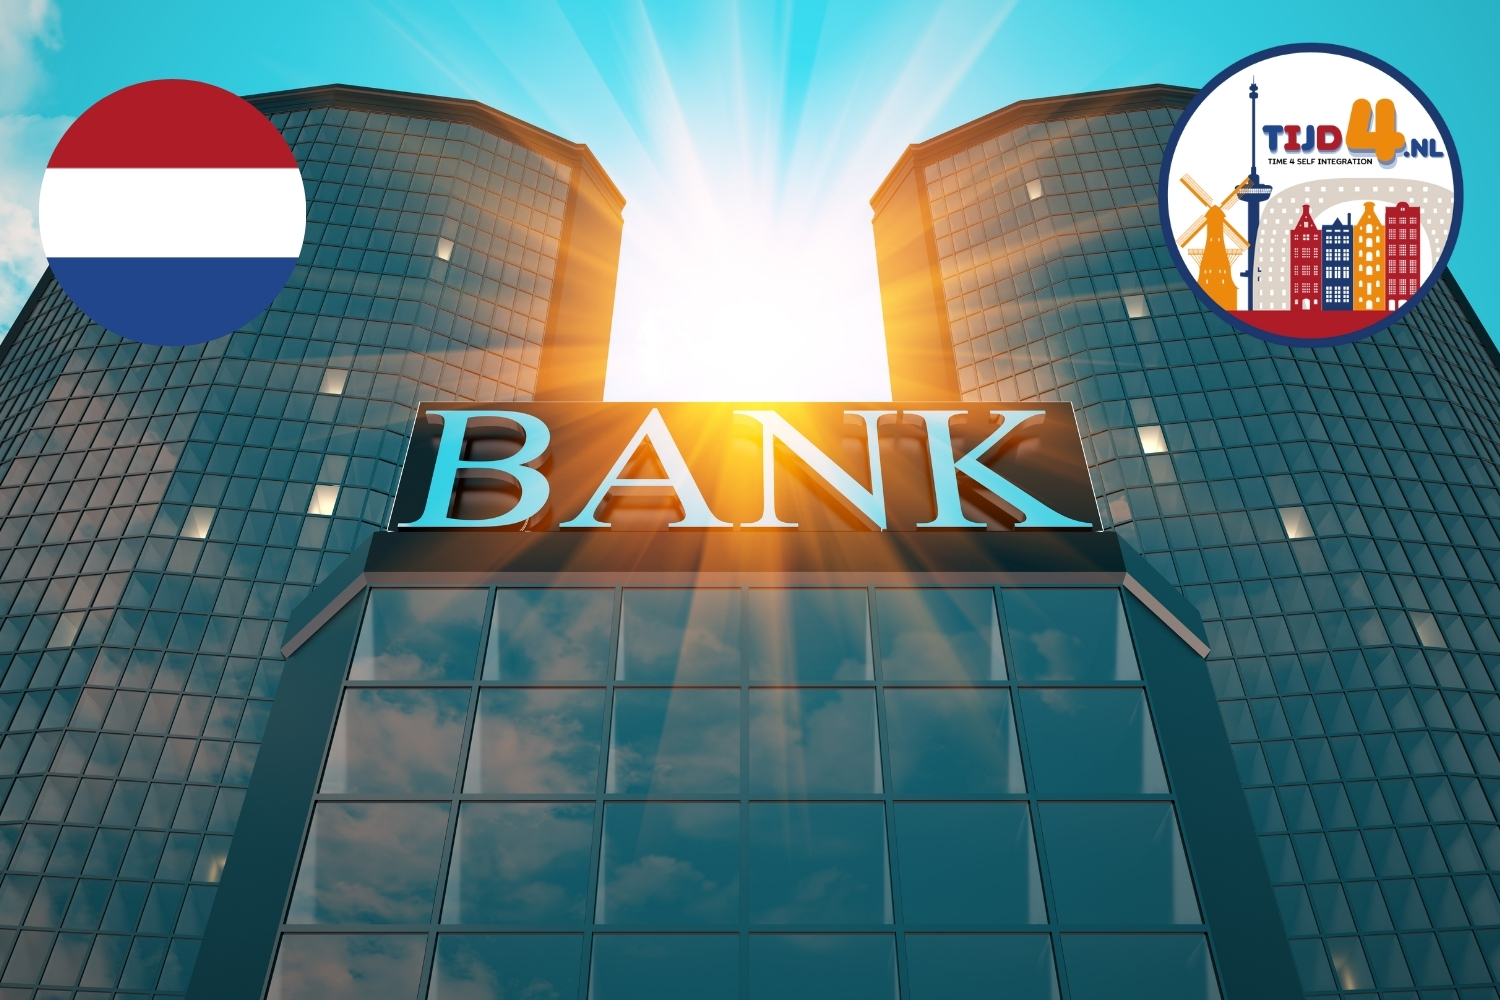 Afbeelding van een groot bankgebouw met de Nederlandse vlag in de linkerbovenhoek en het logo van TIJD4.NL in de rechterbovenhoek